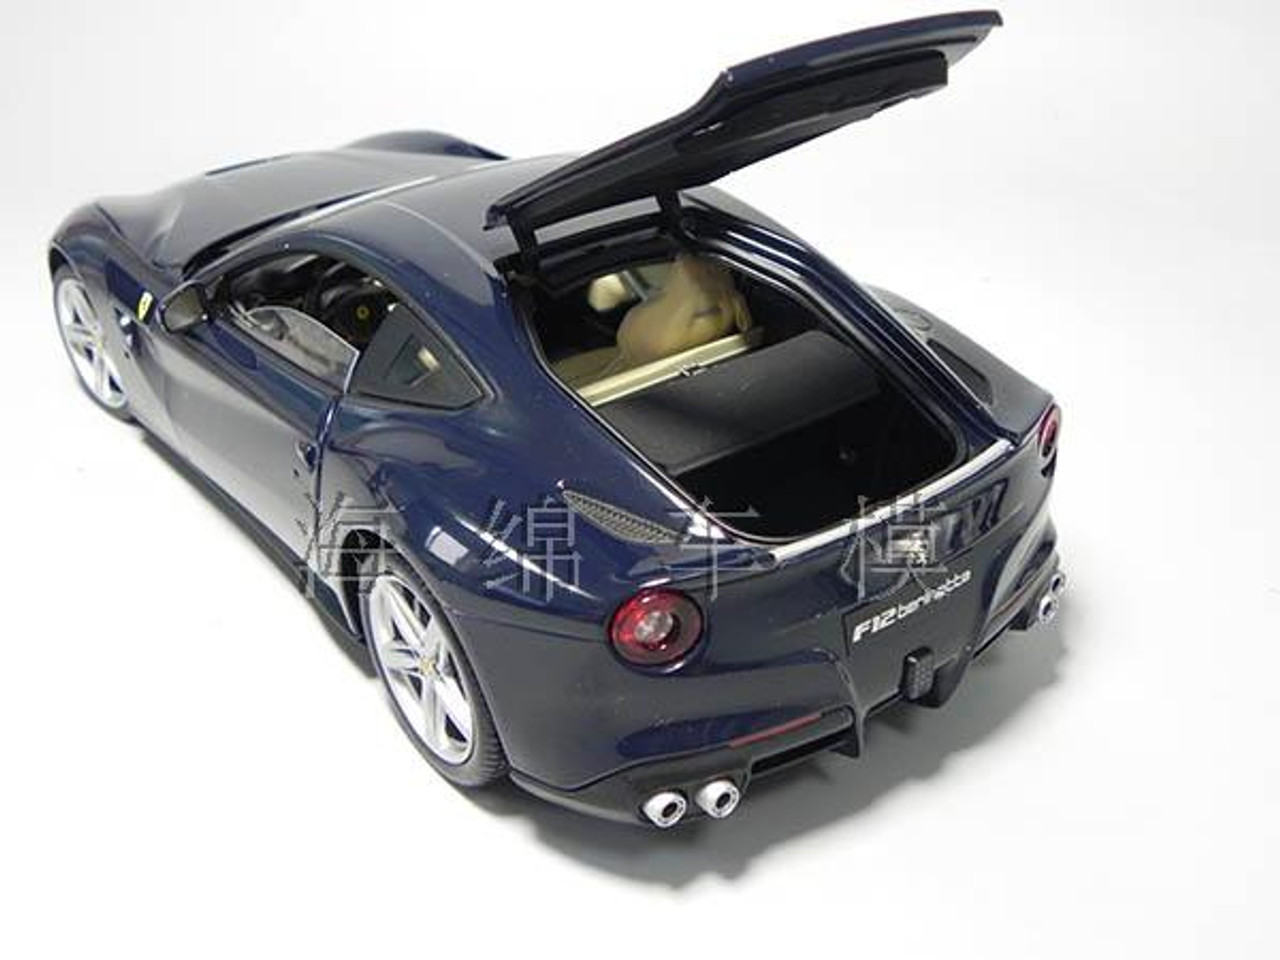 1/18 Hot Wheels Hotwheels Elite Ferrari F12 (Blue) Diecast Model